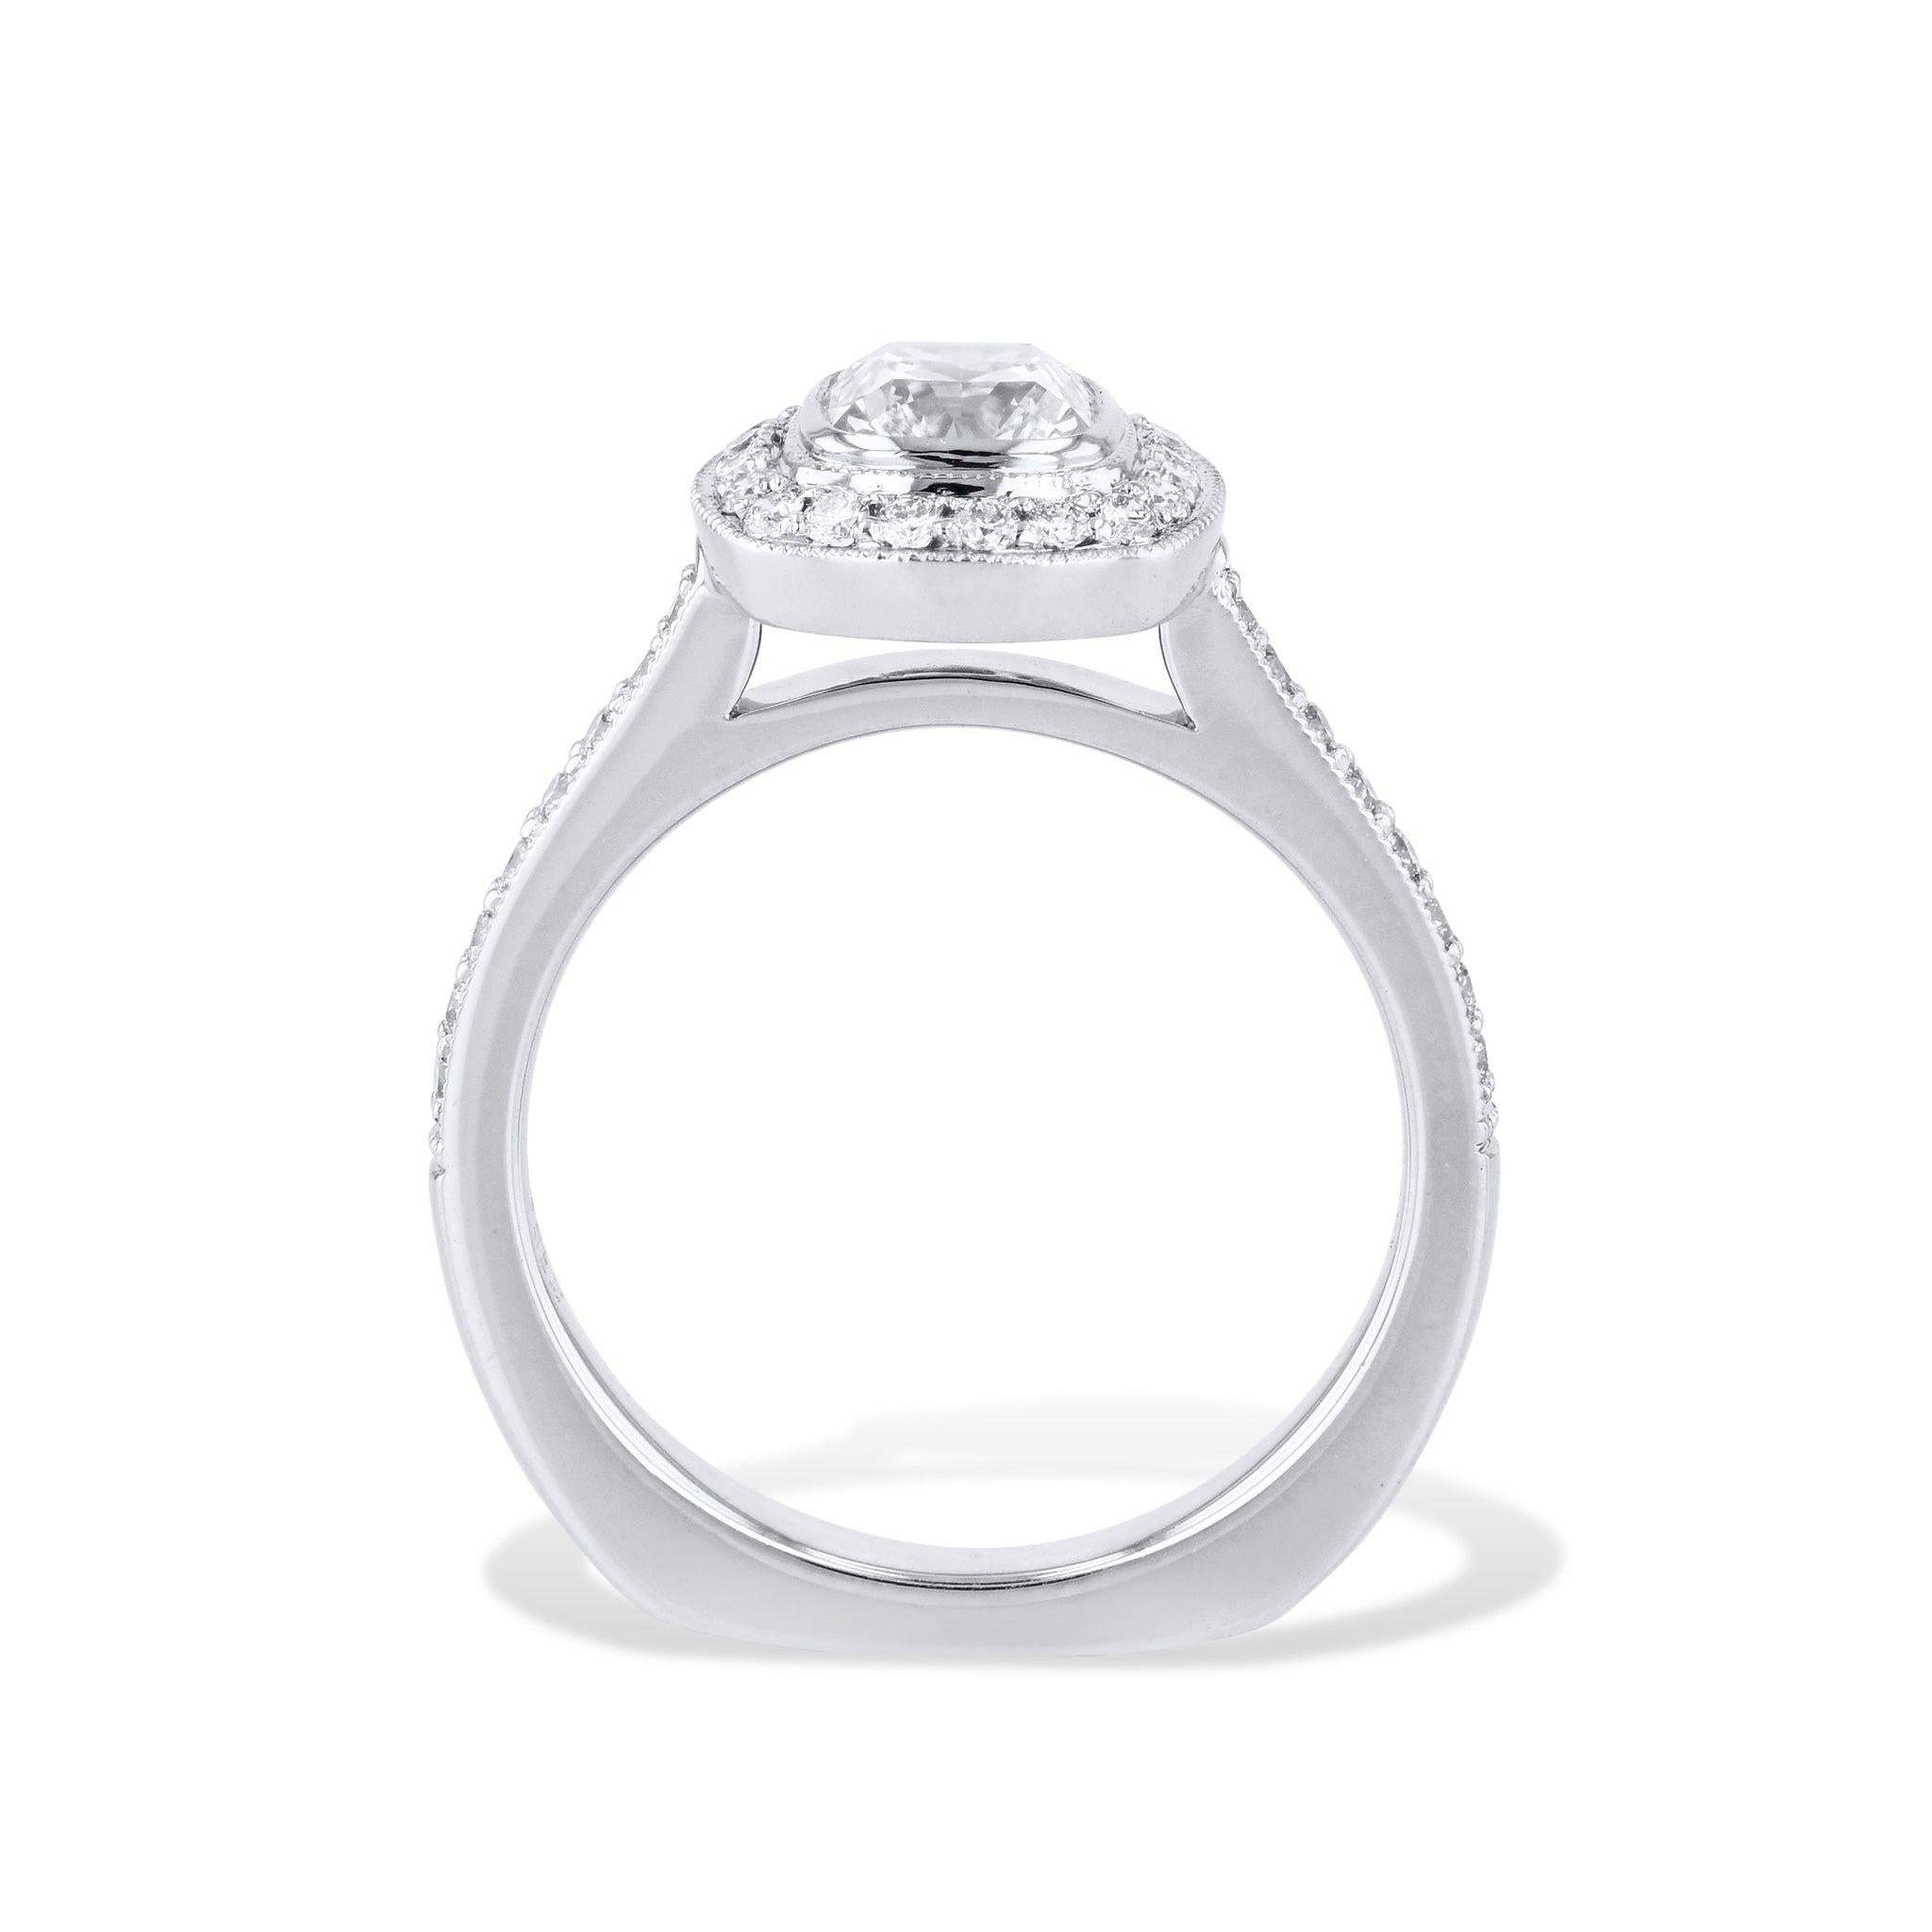 Dieser bemerkenswerte Platin-Verlobungsring mit Brillant-Kissenschliff wird Sie begeistern! Der zentrale Diamant ist ein atemberaubender Kissenbrillant, der von 37 schillernden Pflasterdiamanten akzentuiert wird. Handgefertigt von H&H, ist es ein